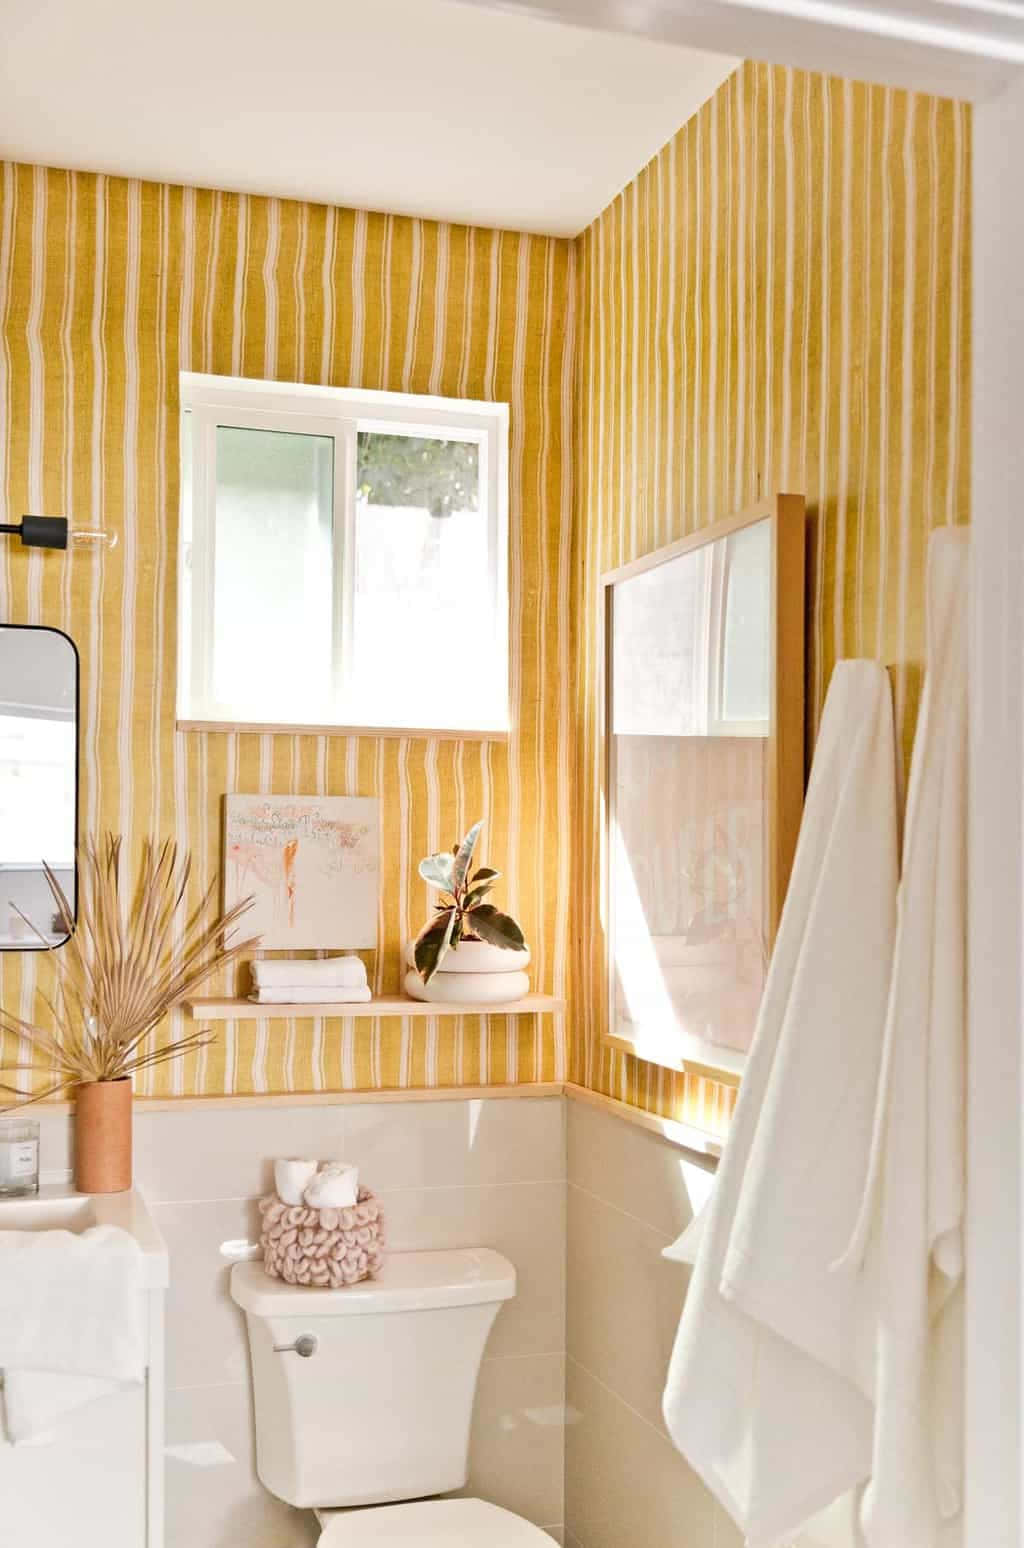 Paredeslistradas Amarelas Para Banheiro Papel de Parede